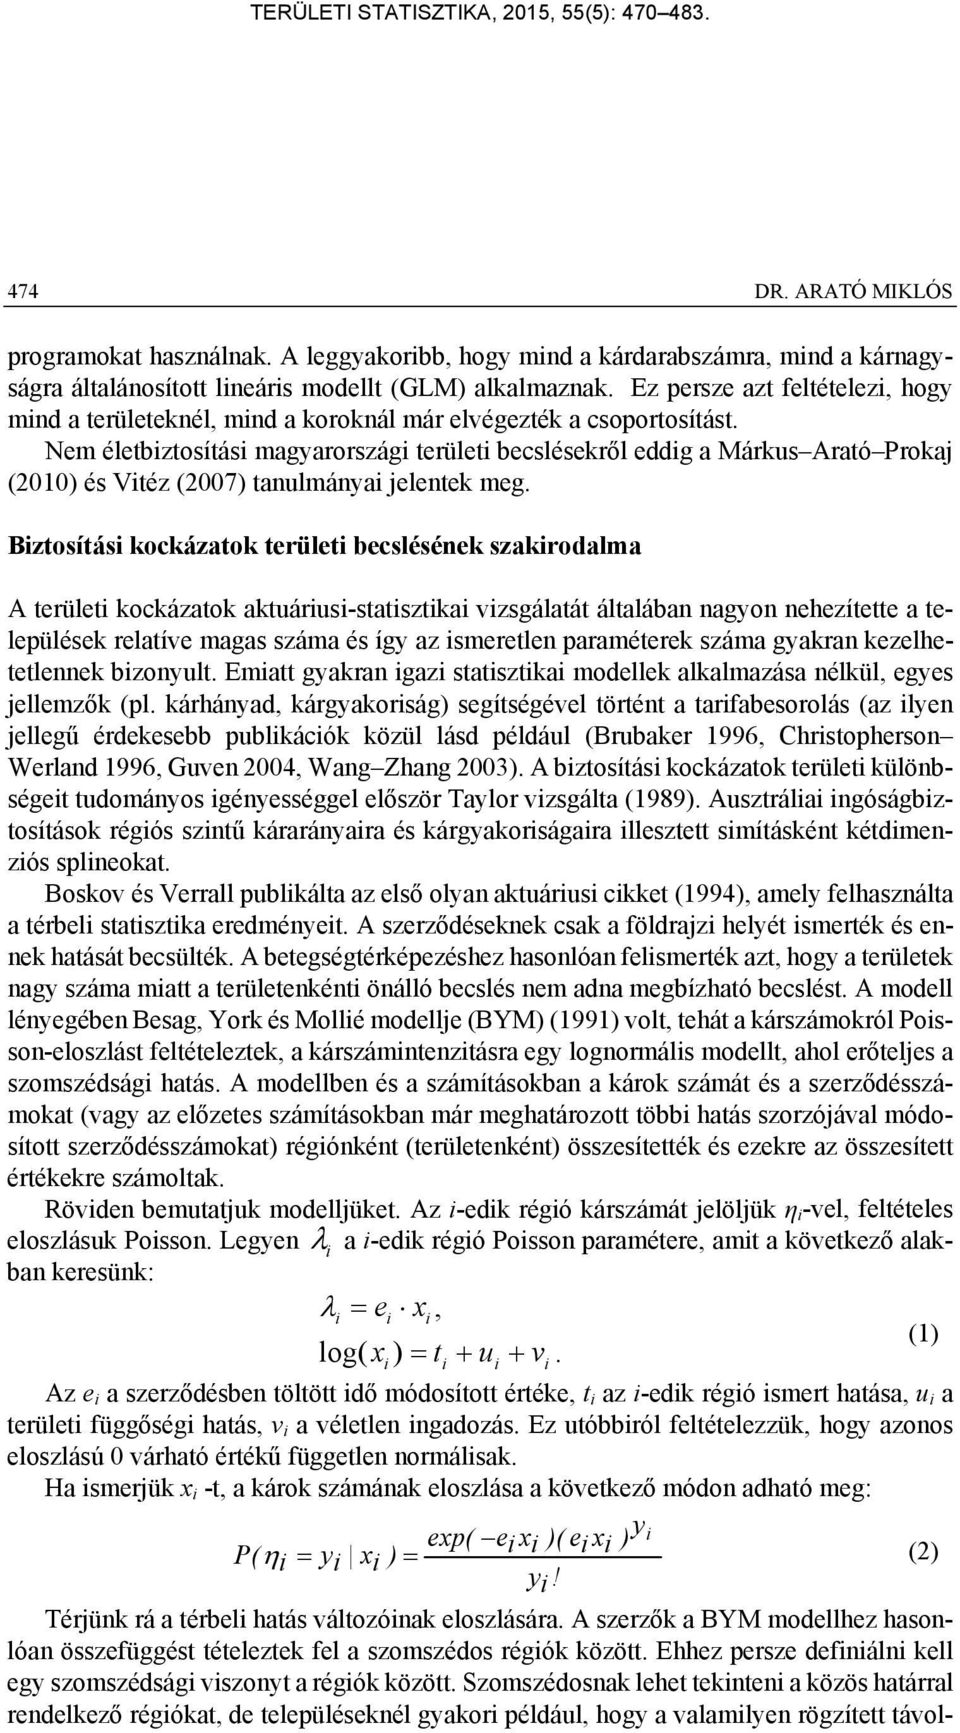 Nem életbztosítás magyarország terület becslésekről eddg a Márkus Arató Proka (010) és Vtéz (007) tanulmánya elentek meg.